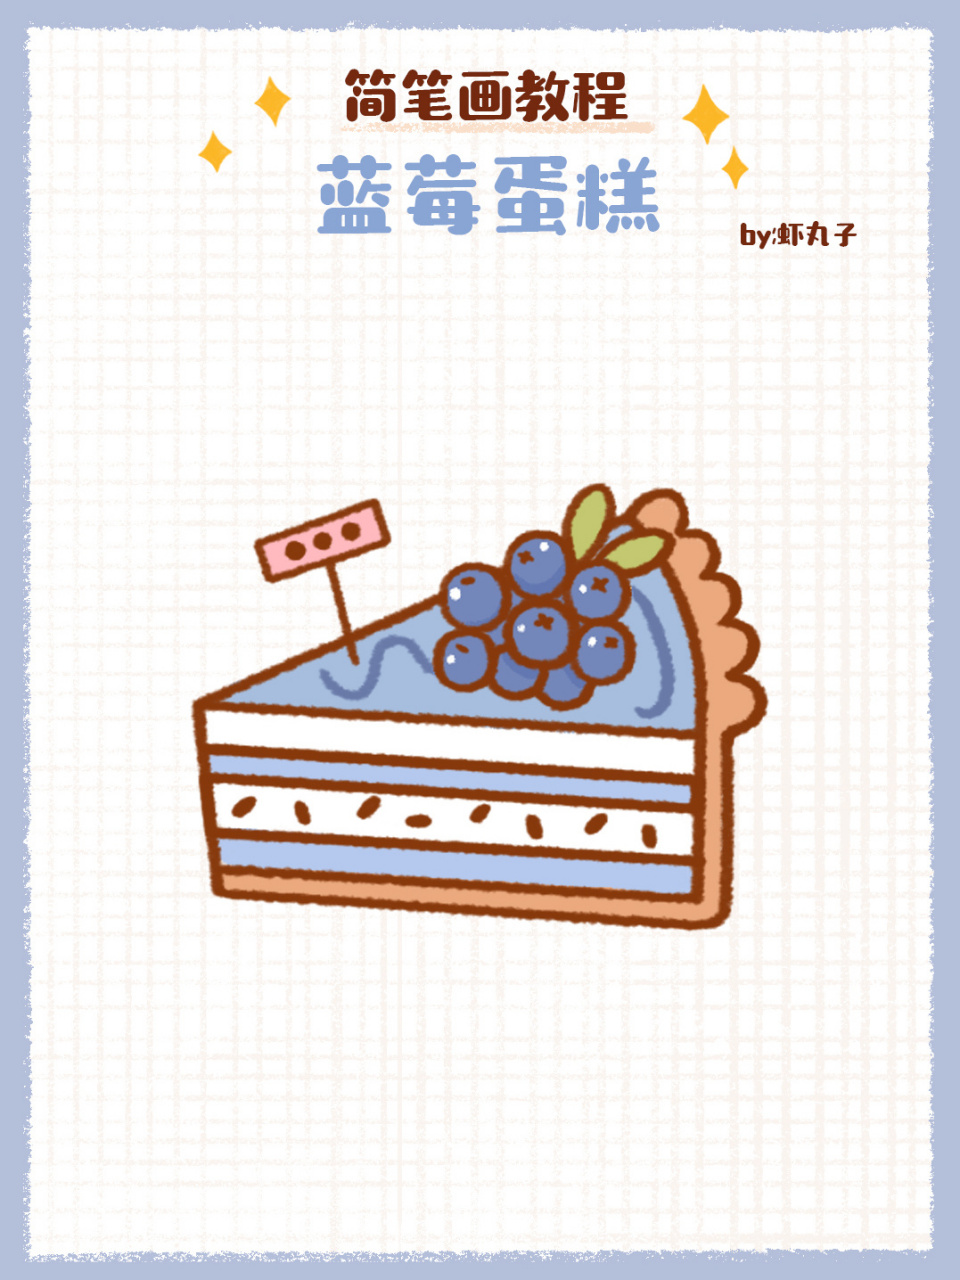 简笔画教程之蓝莓蛋糕90 简笔画教程之蓝莓蛋糕哦